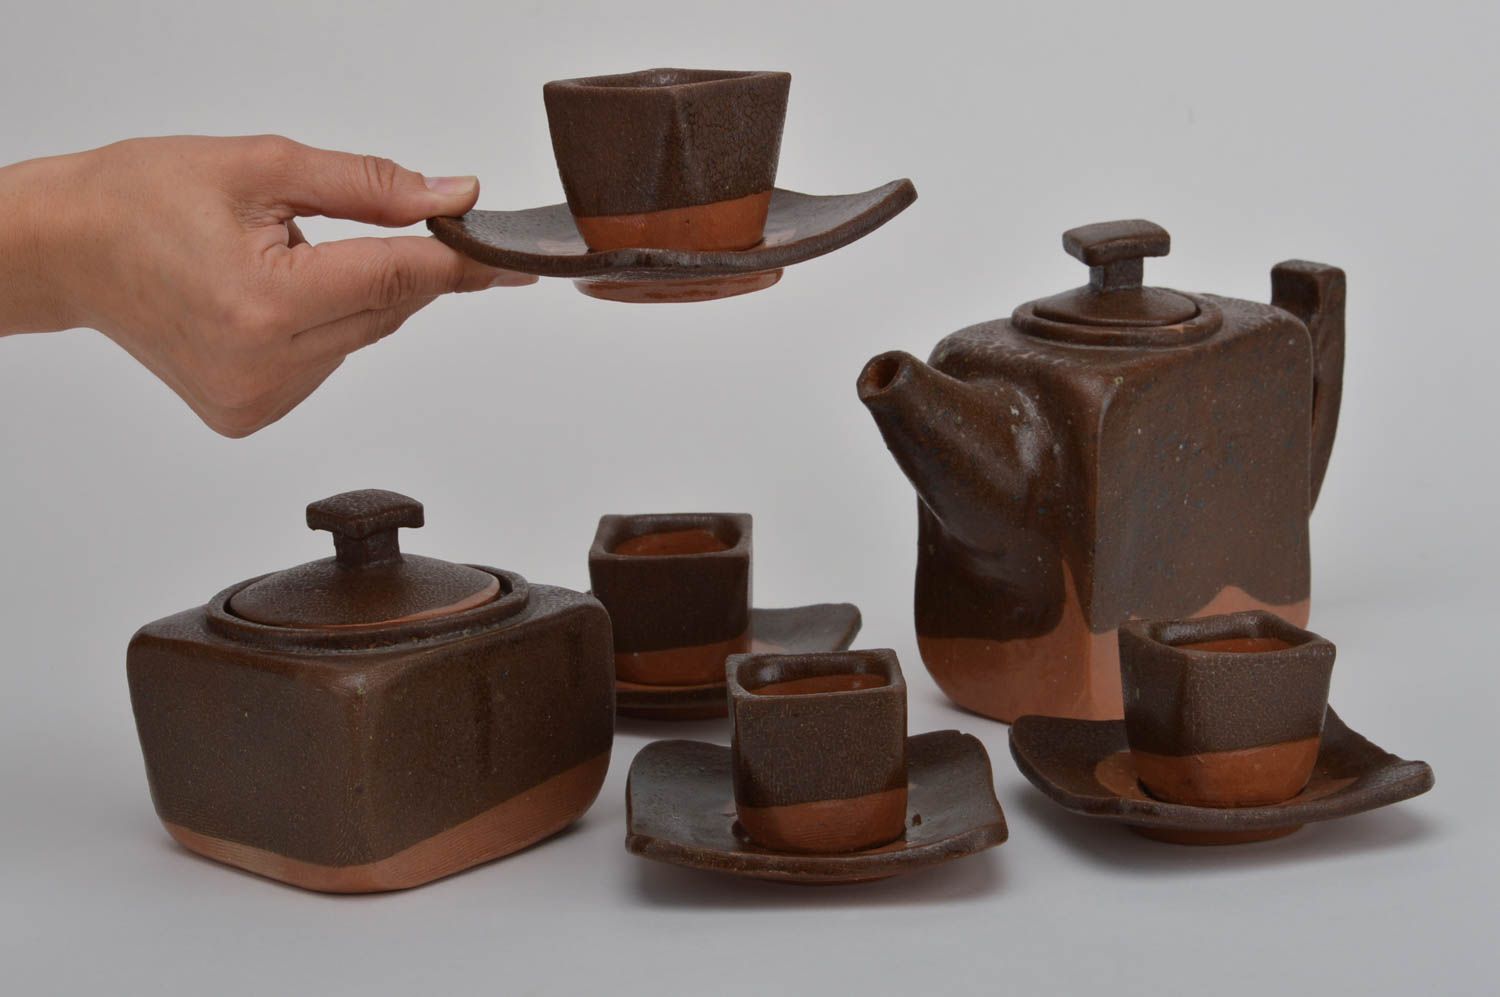 Juego de vajilla de cerámica hecha a mano menaje de cocina ideas de regalos foto 3